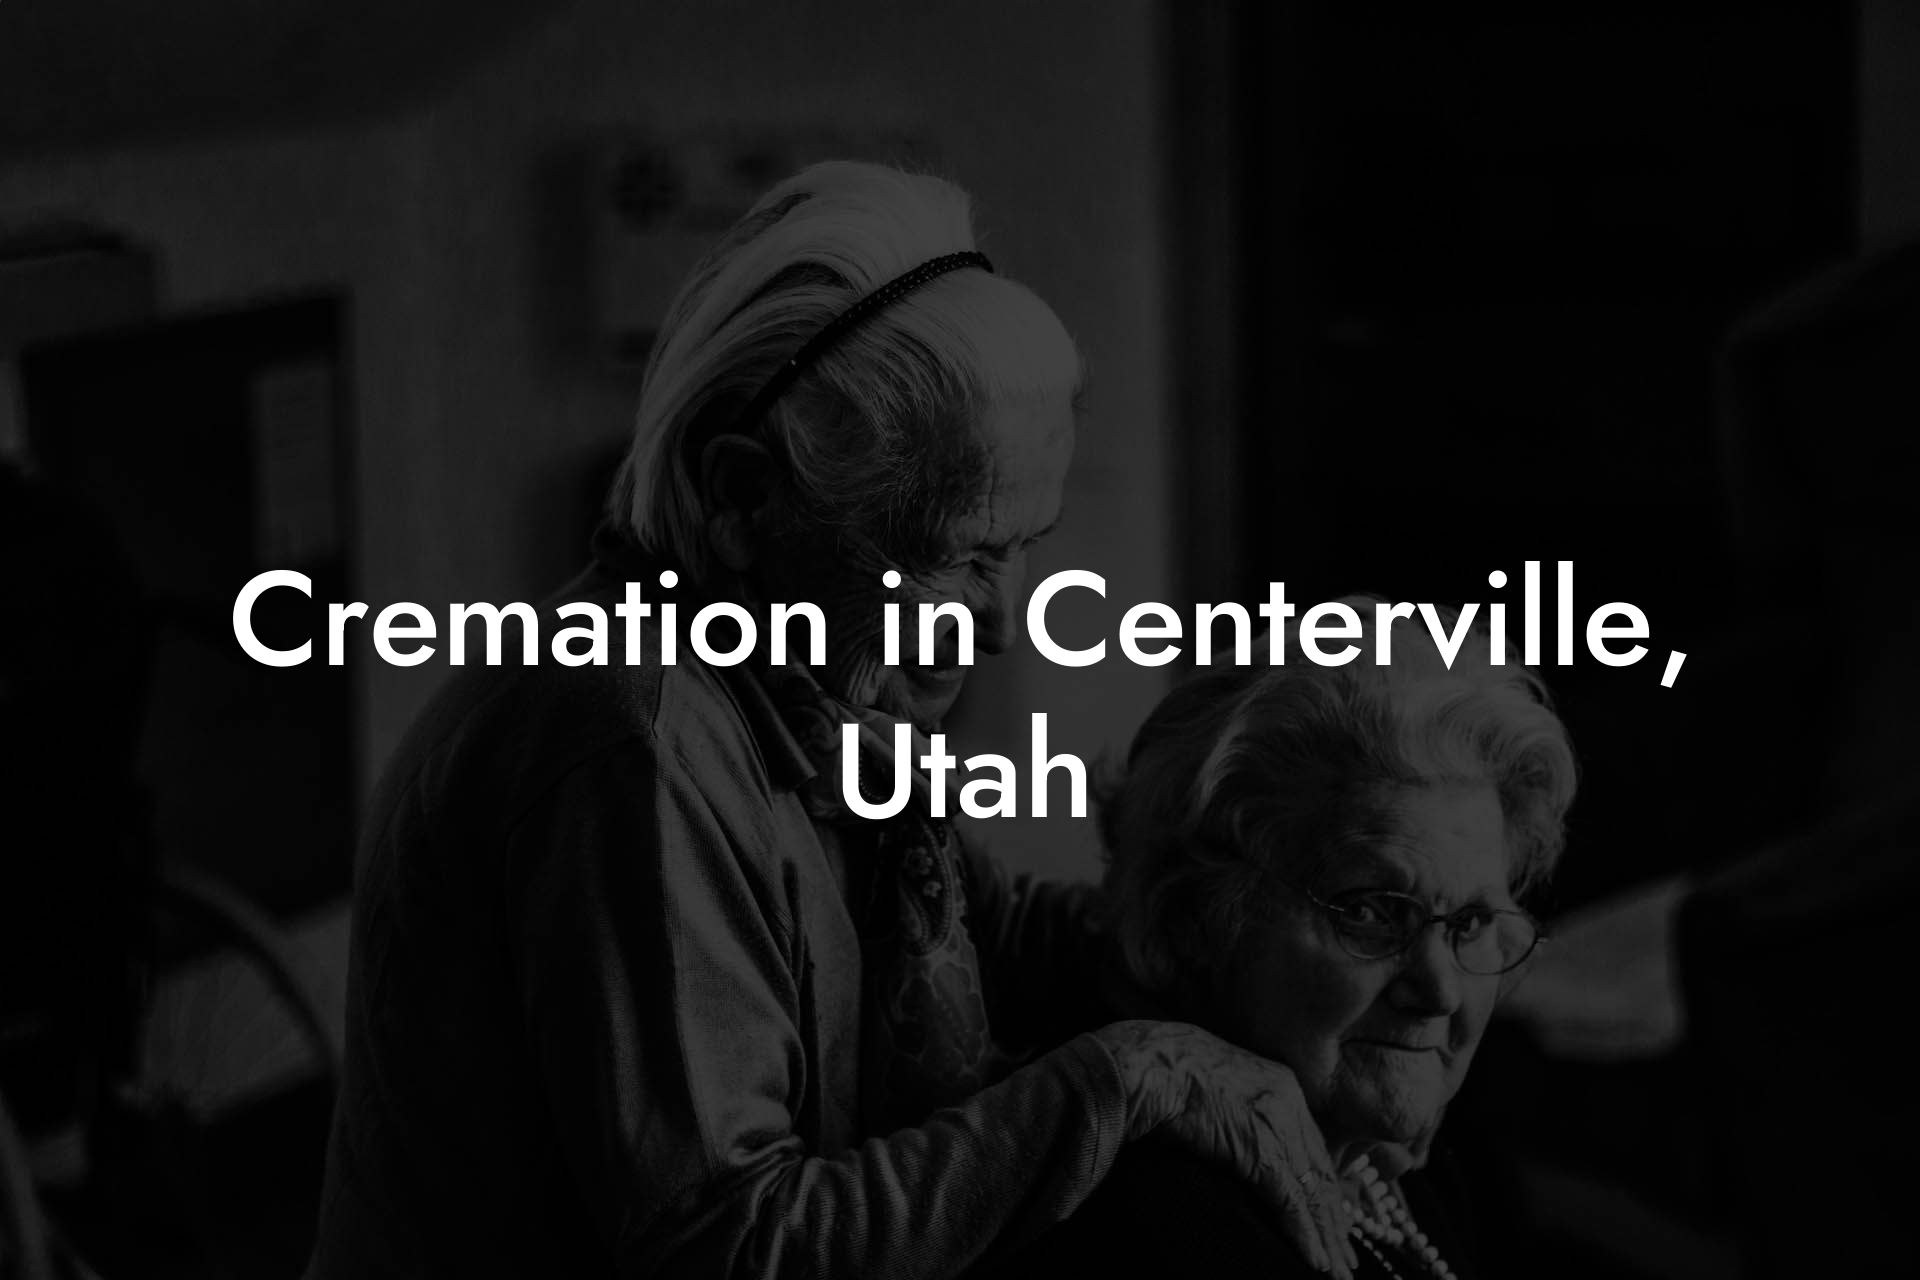 Cremation in Centerville, Utah